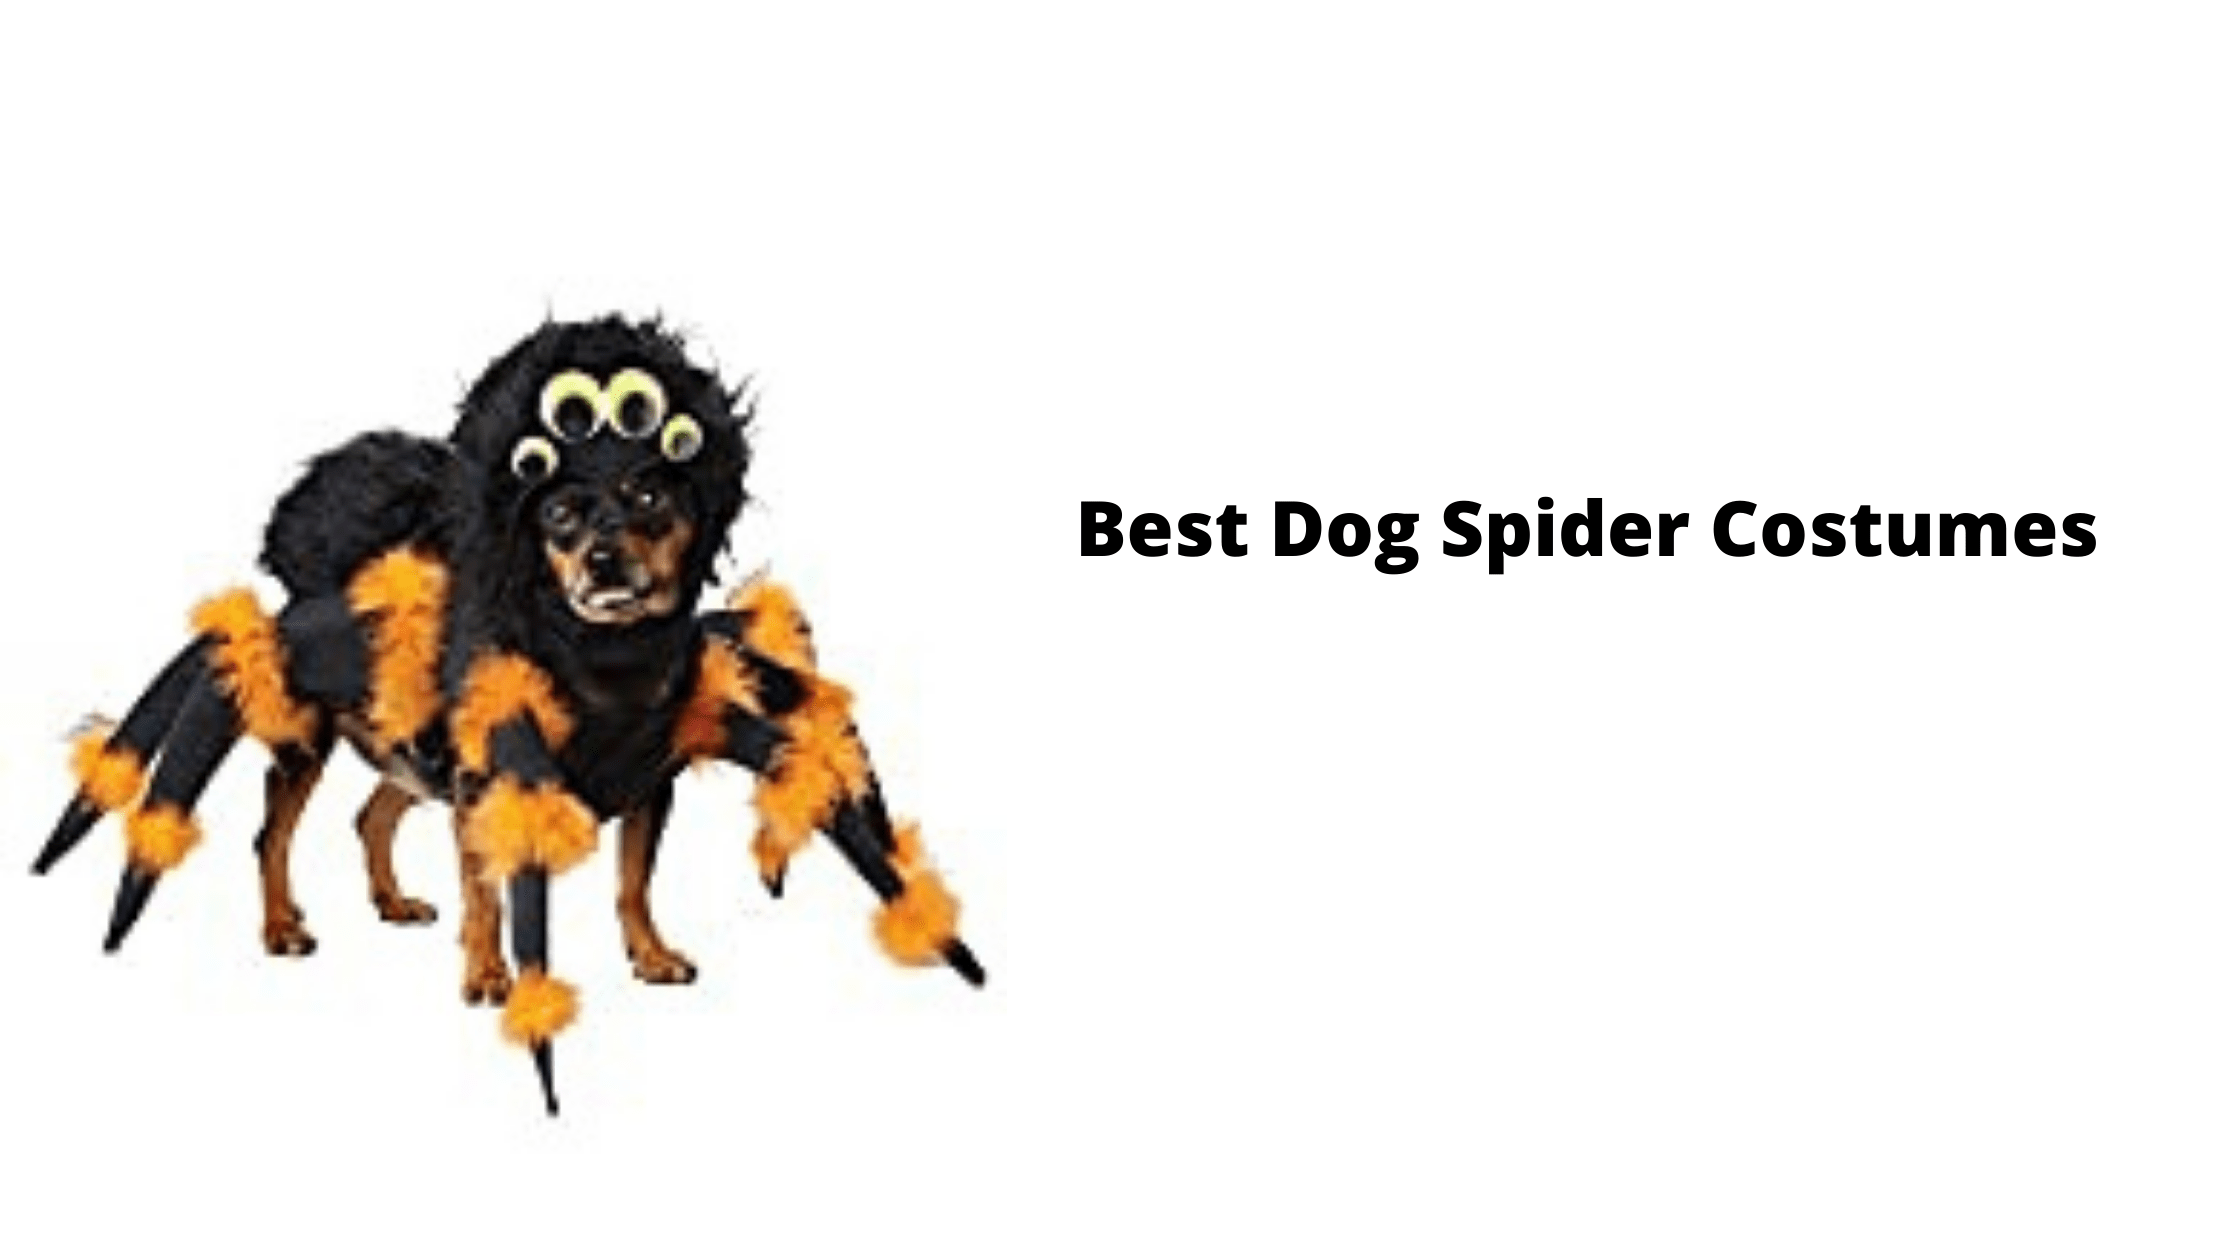 Best Dog Spider Costumes